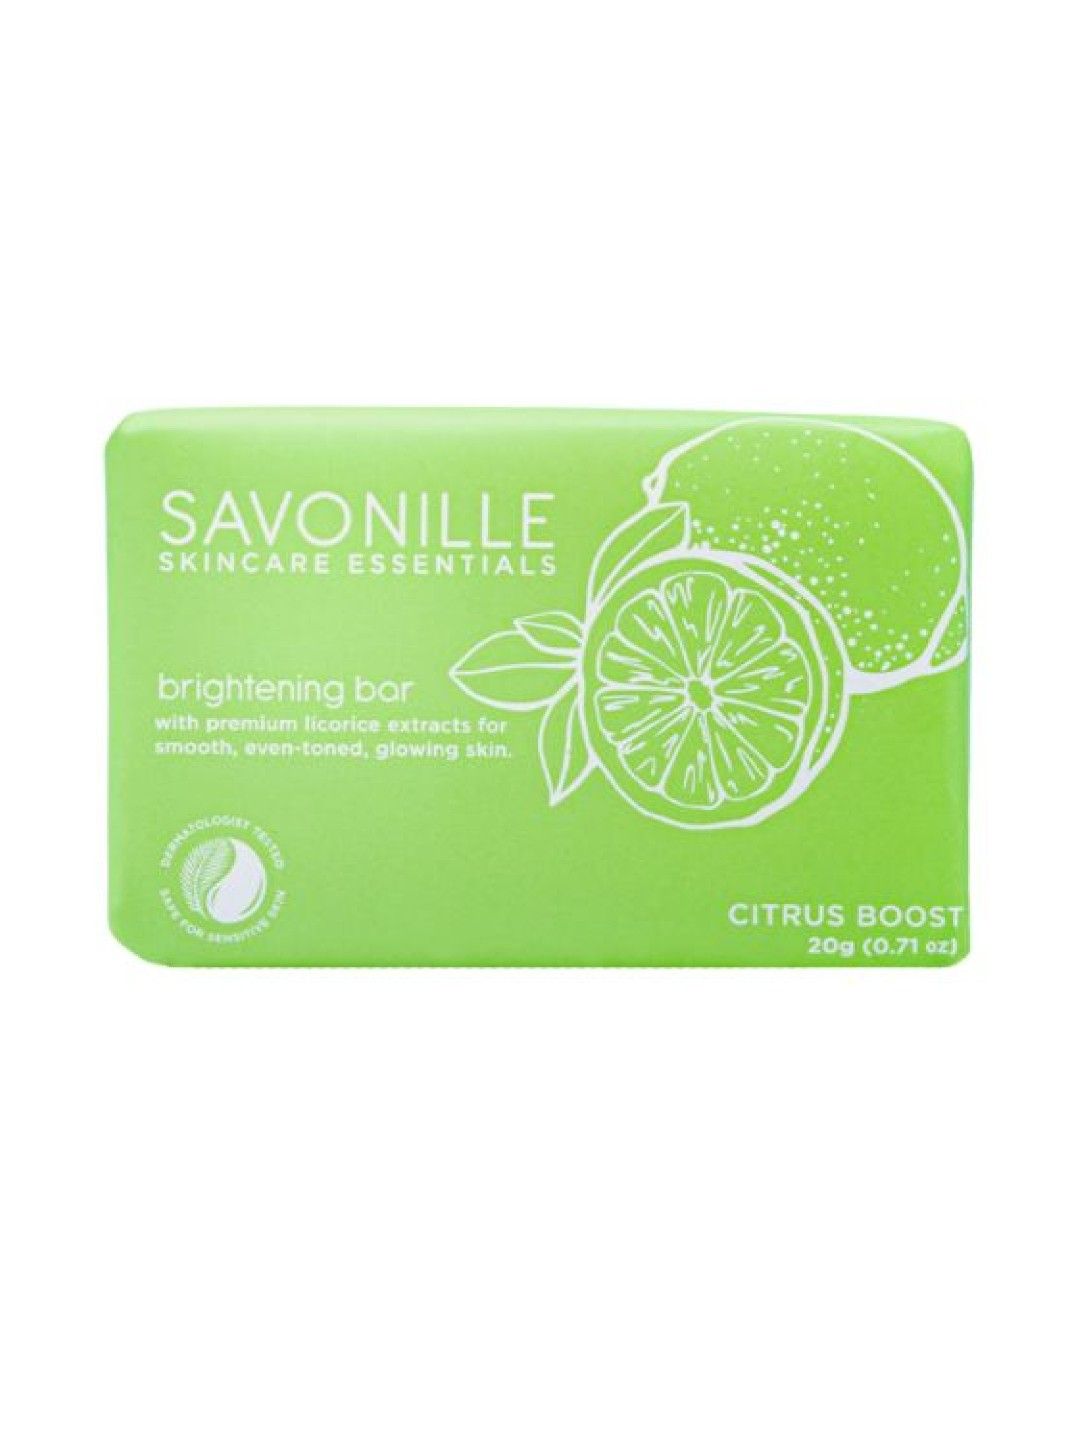 Savonille Skincare Essentials Citrus Boost Travel Trio (No Color- Image 4)